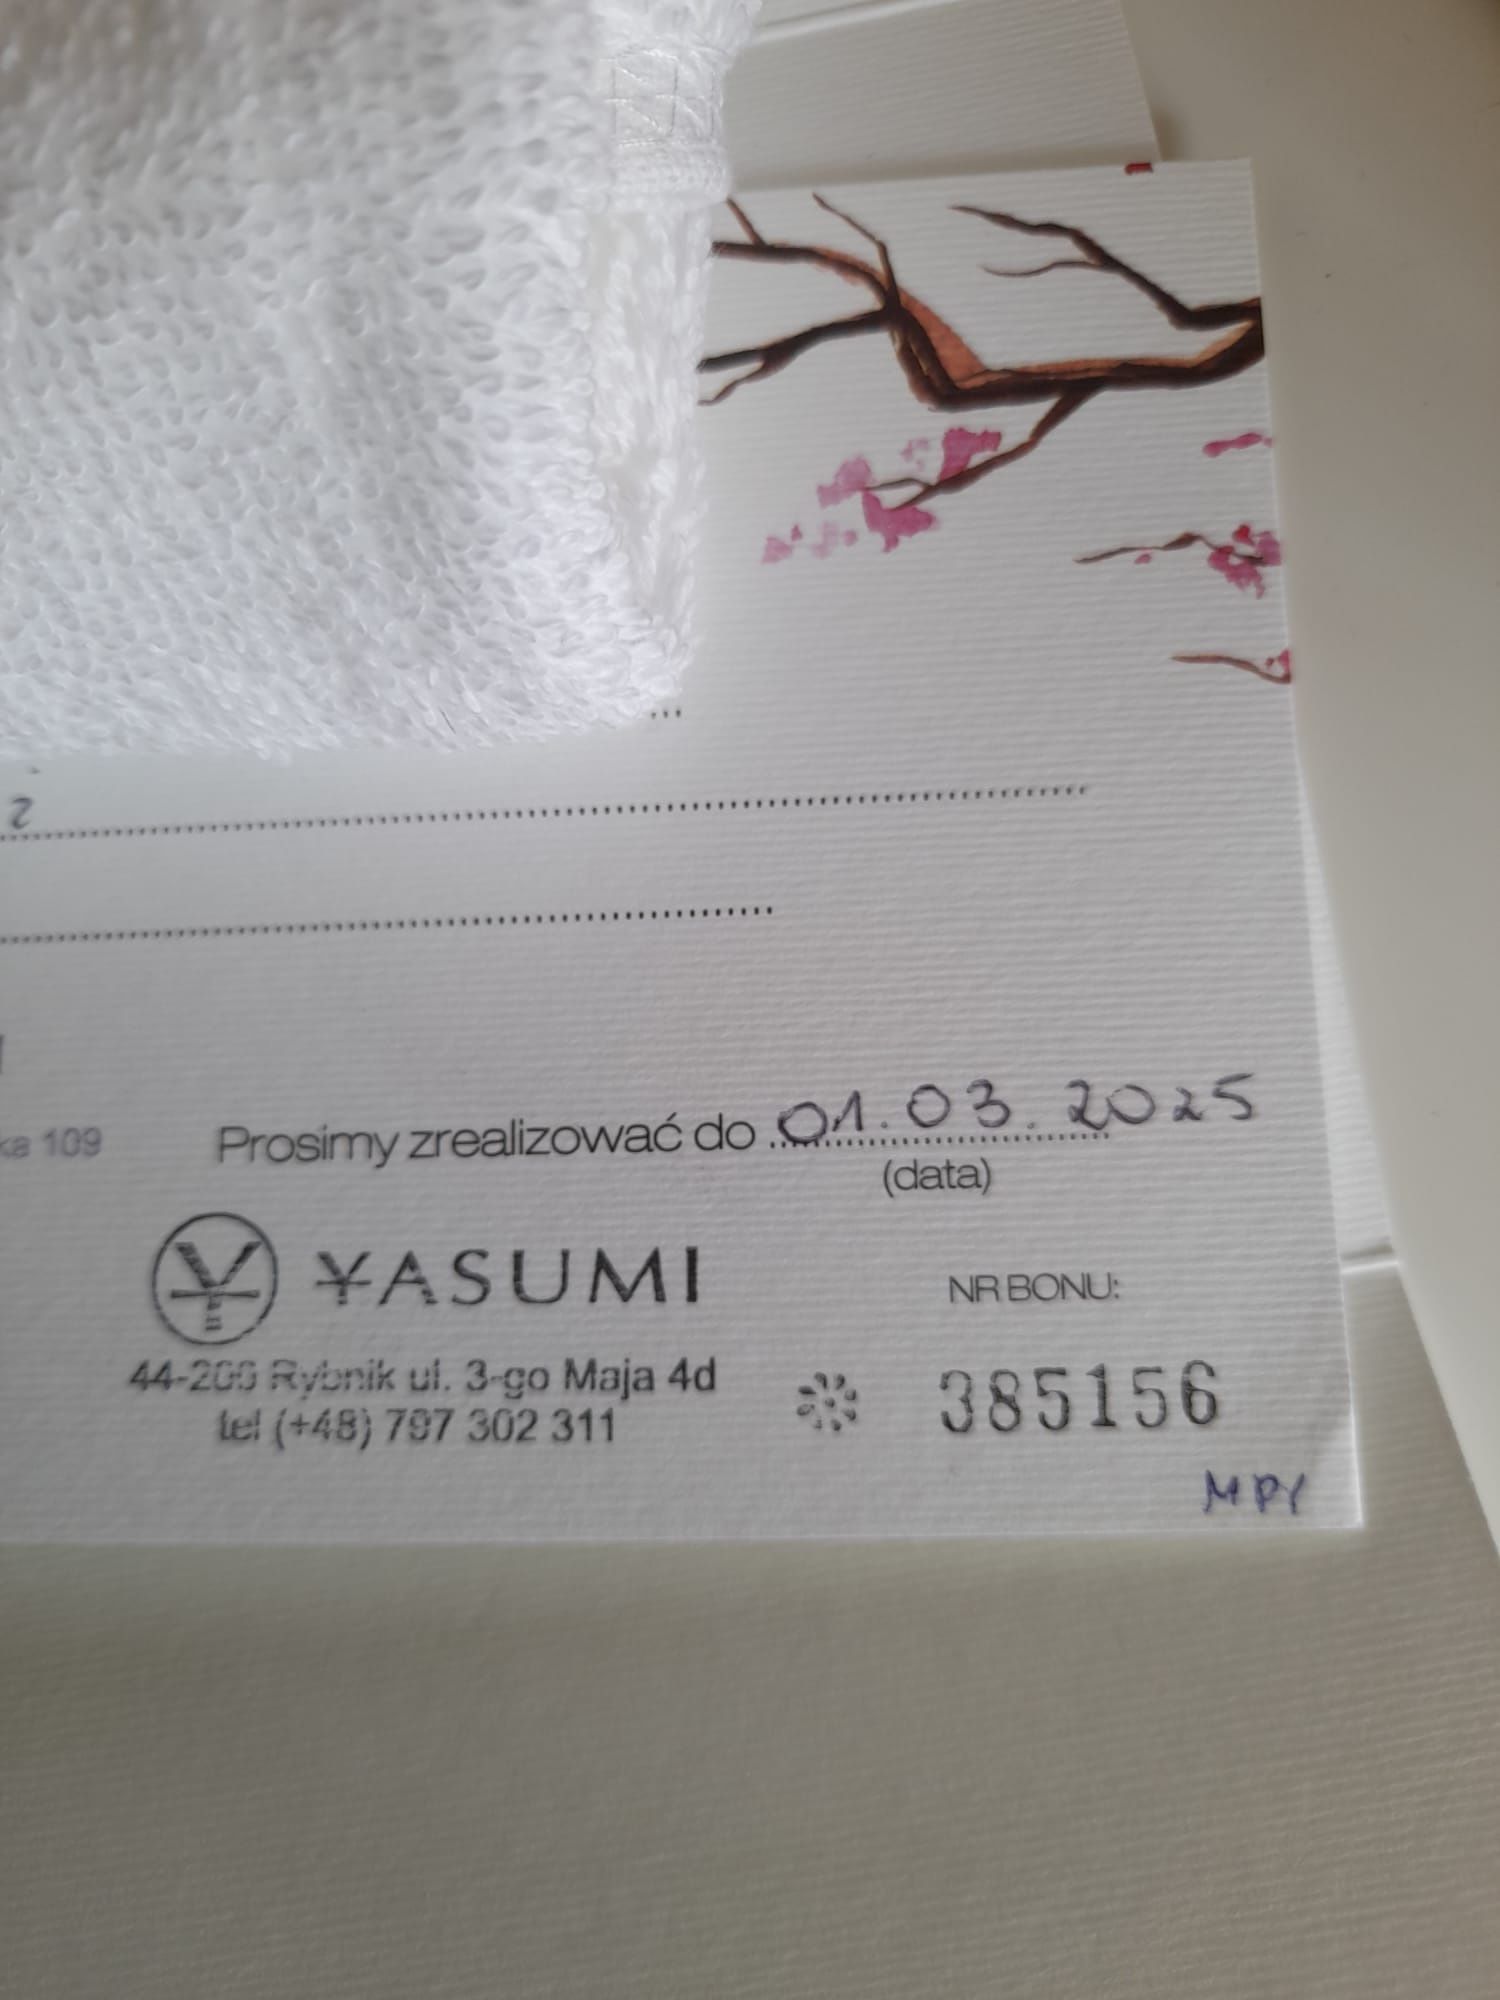 Yasumi bon wartości 300 zł uroda zdrowie